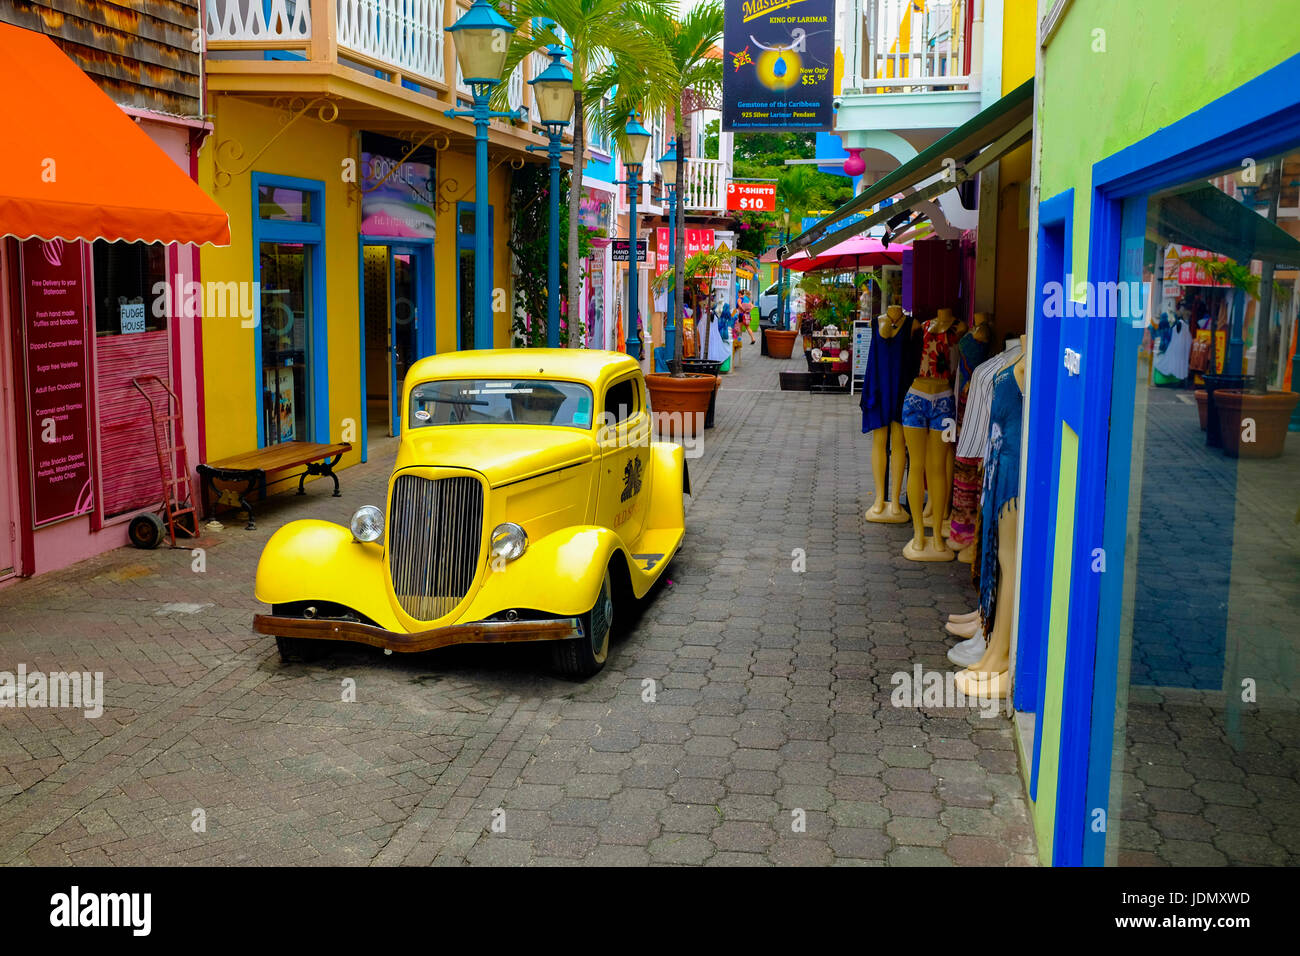 Vintage Car on Old Street, Philipsburg, St. Maarten Stock Photo